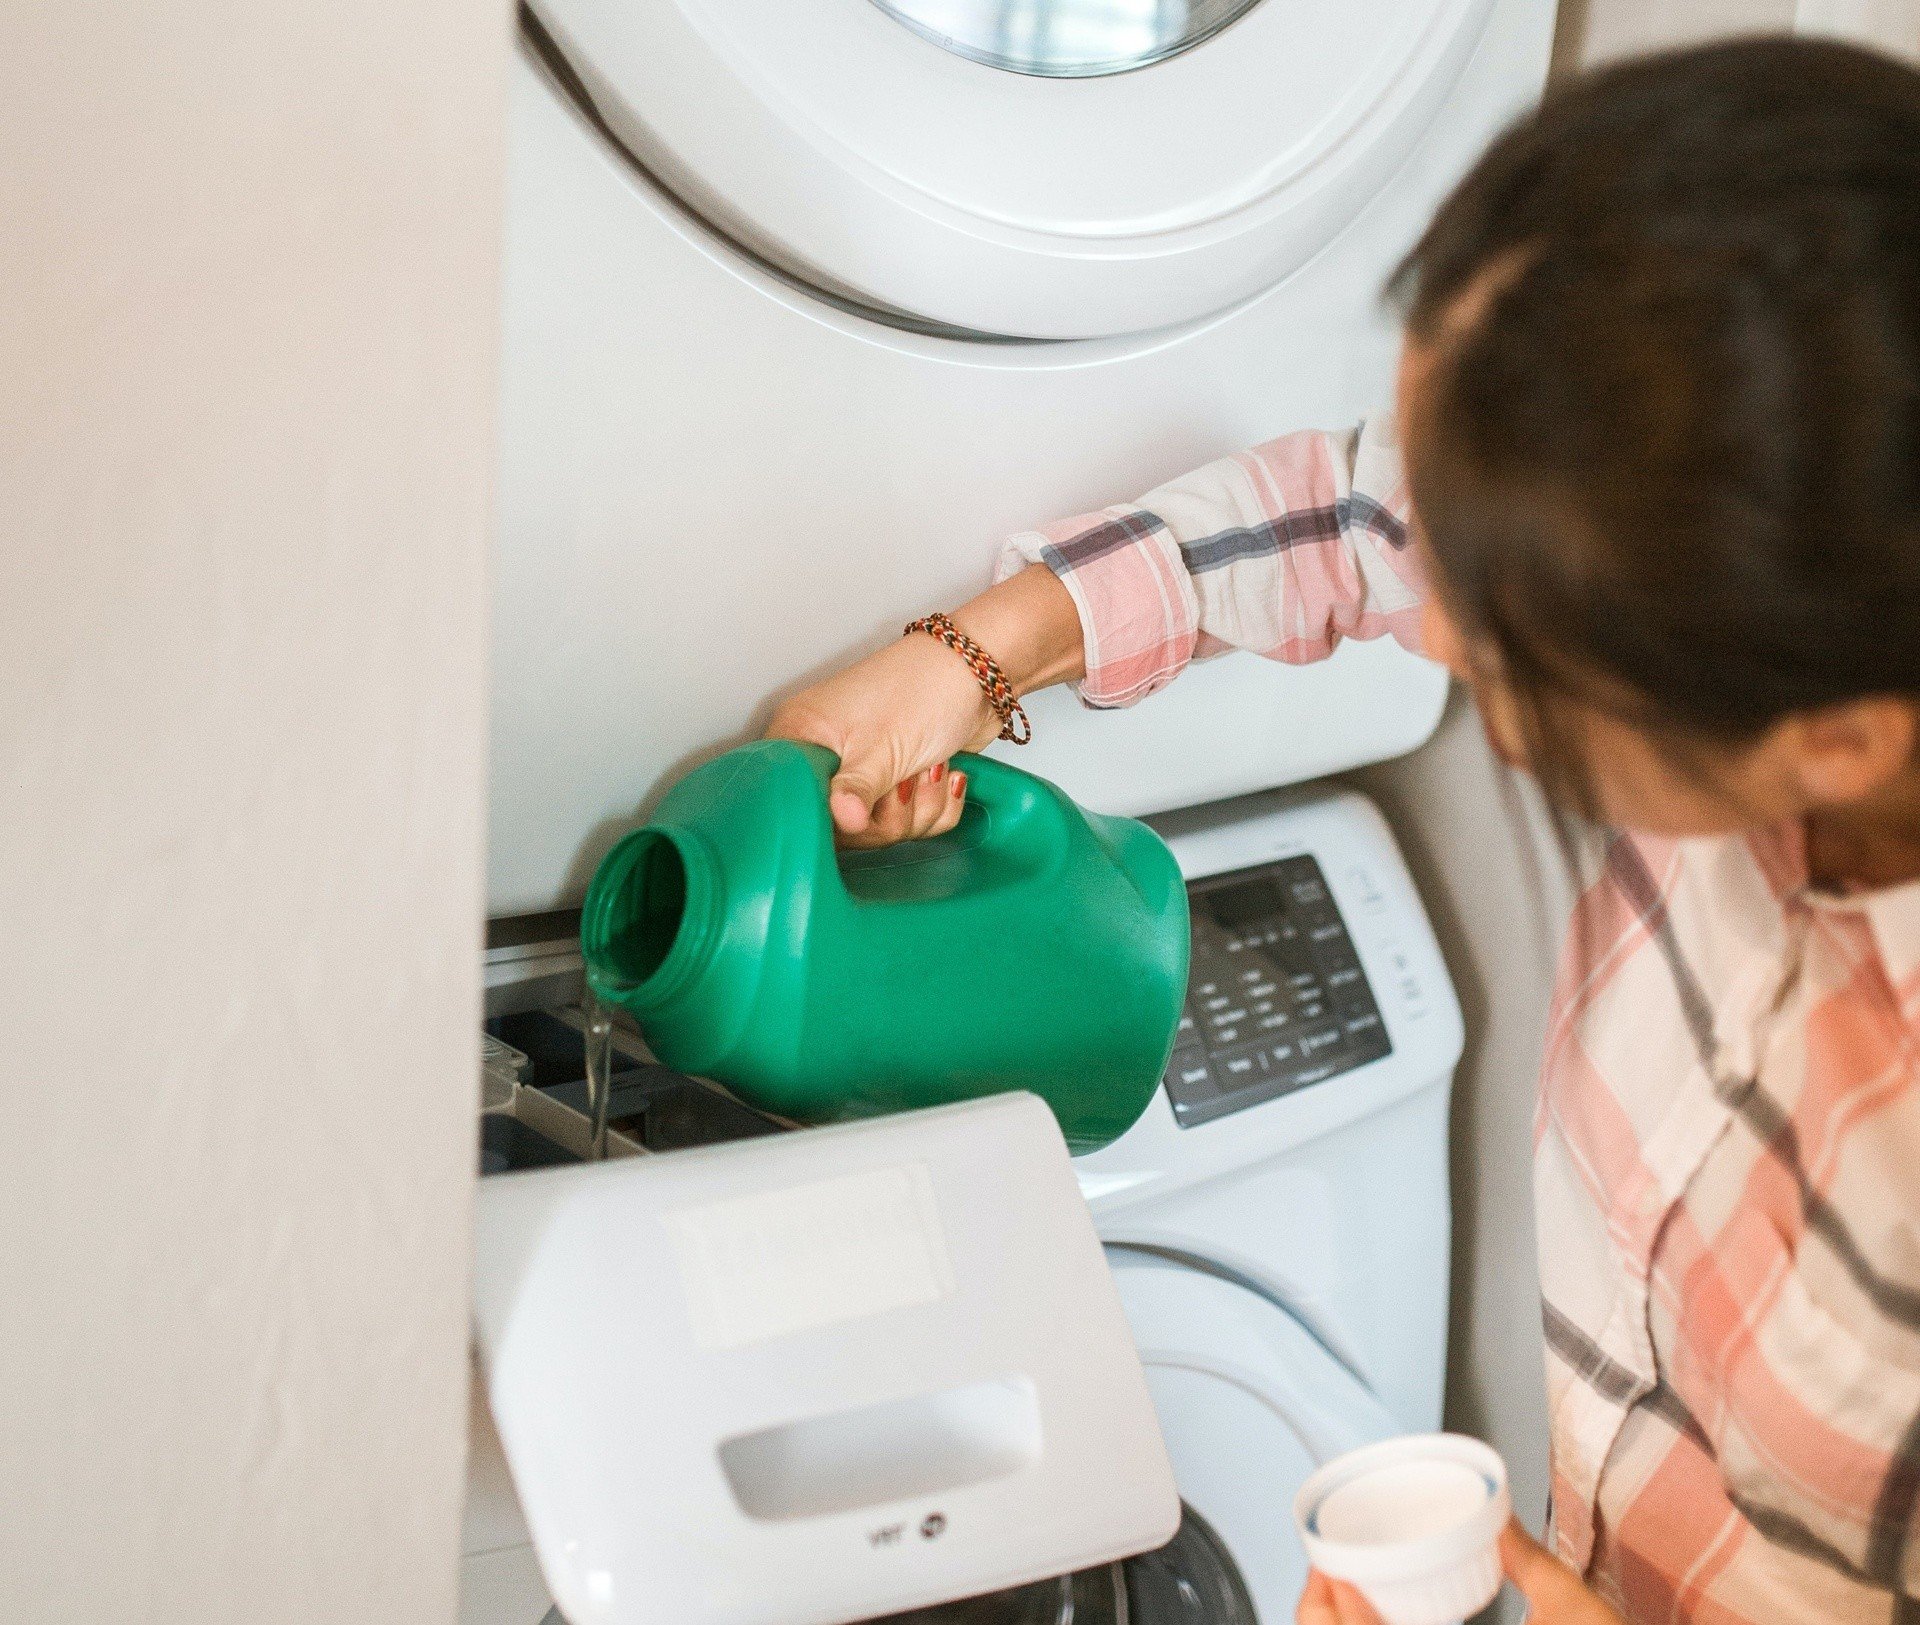 Badania wskazują, że częste sprzątanie skraca życie! Domowe środki czystości,  które szkodzą naszemu zdrowiu | RegioDom